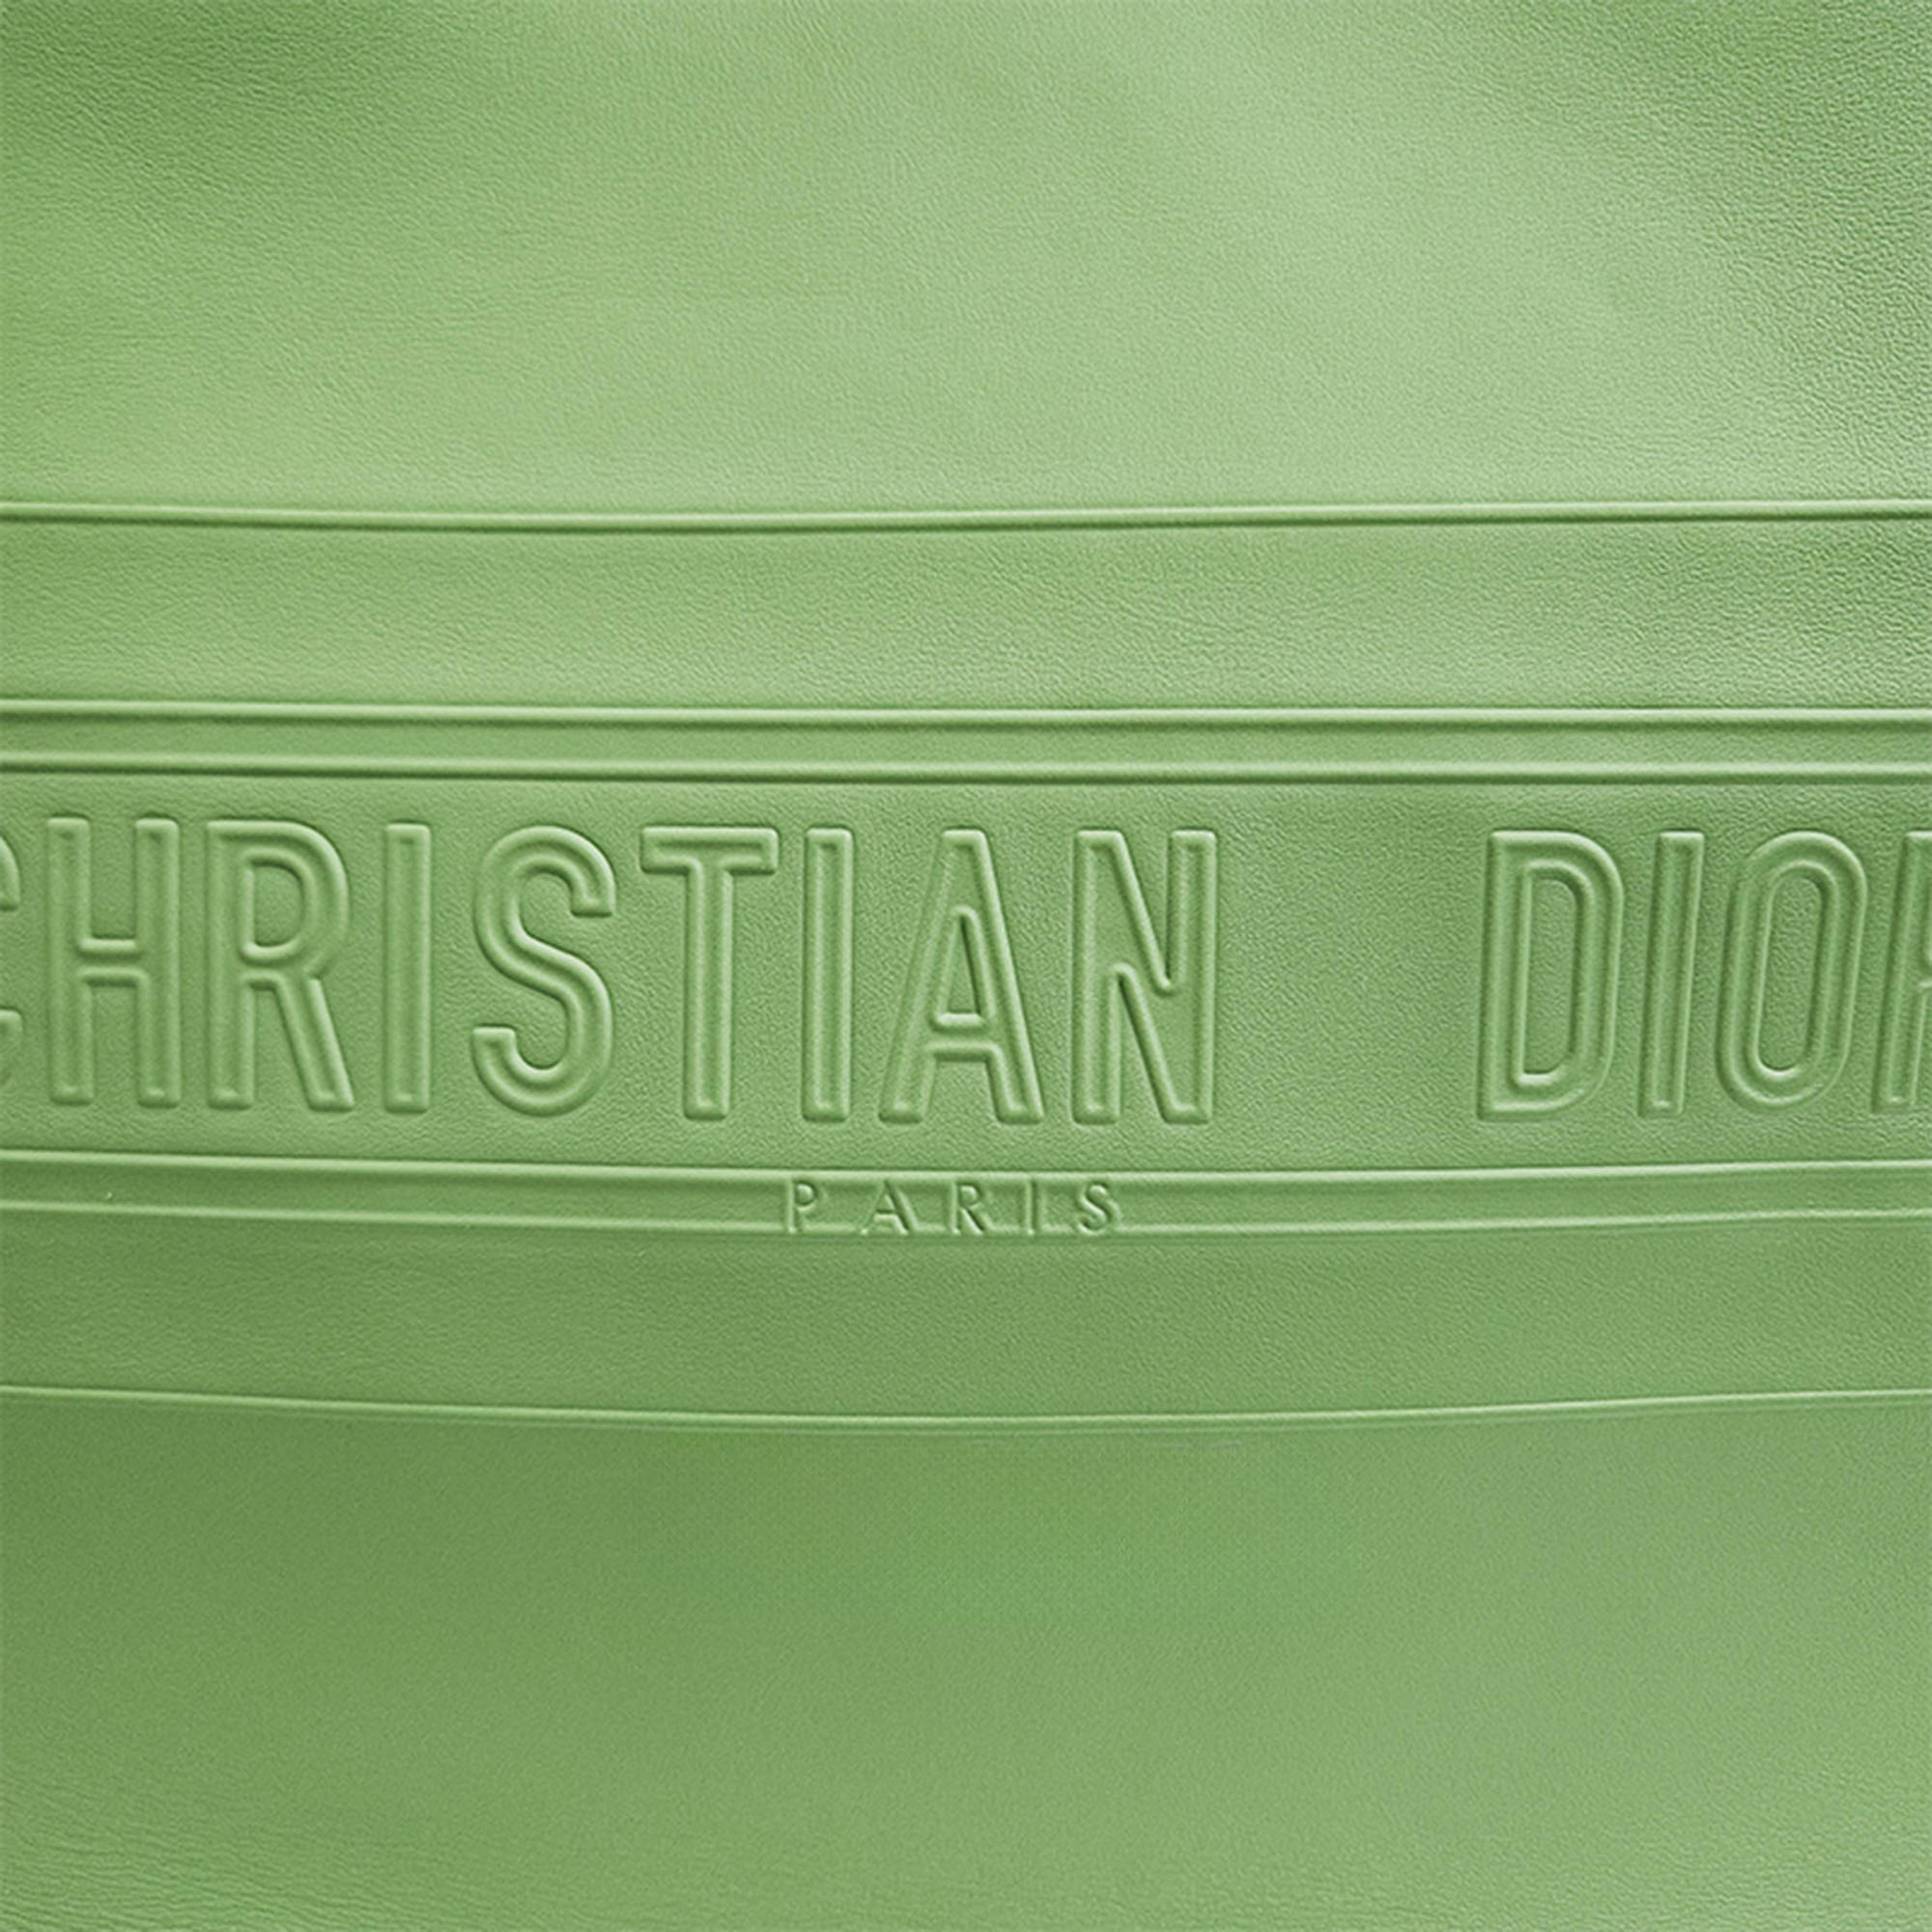 Christian Dior Book Tote Bag 36 M1296